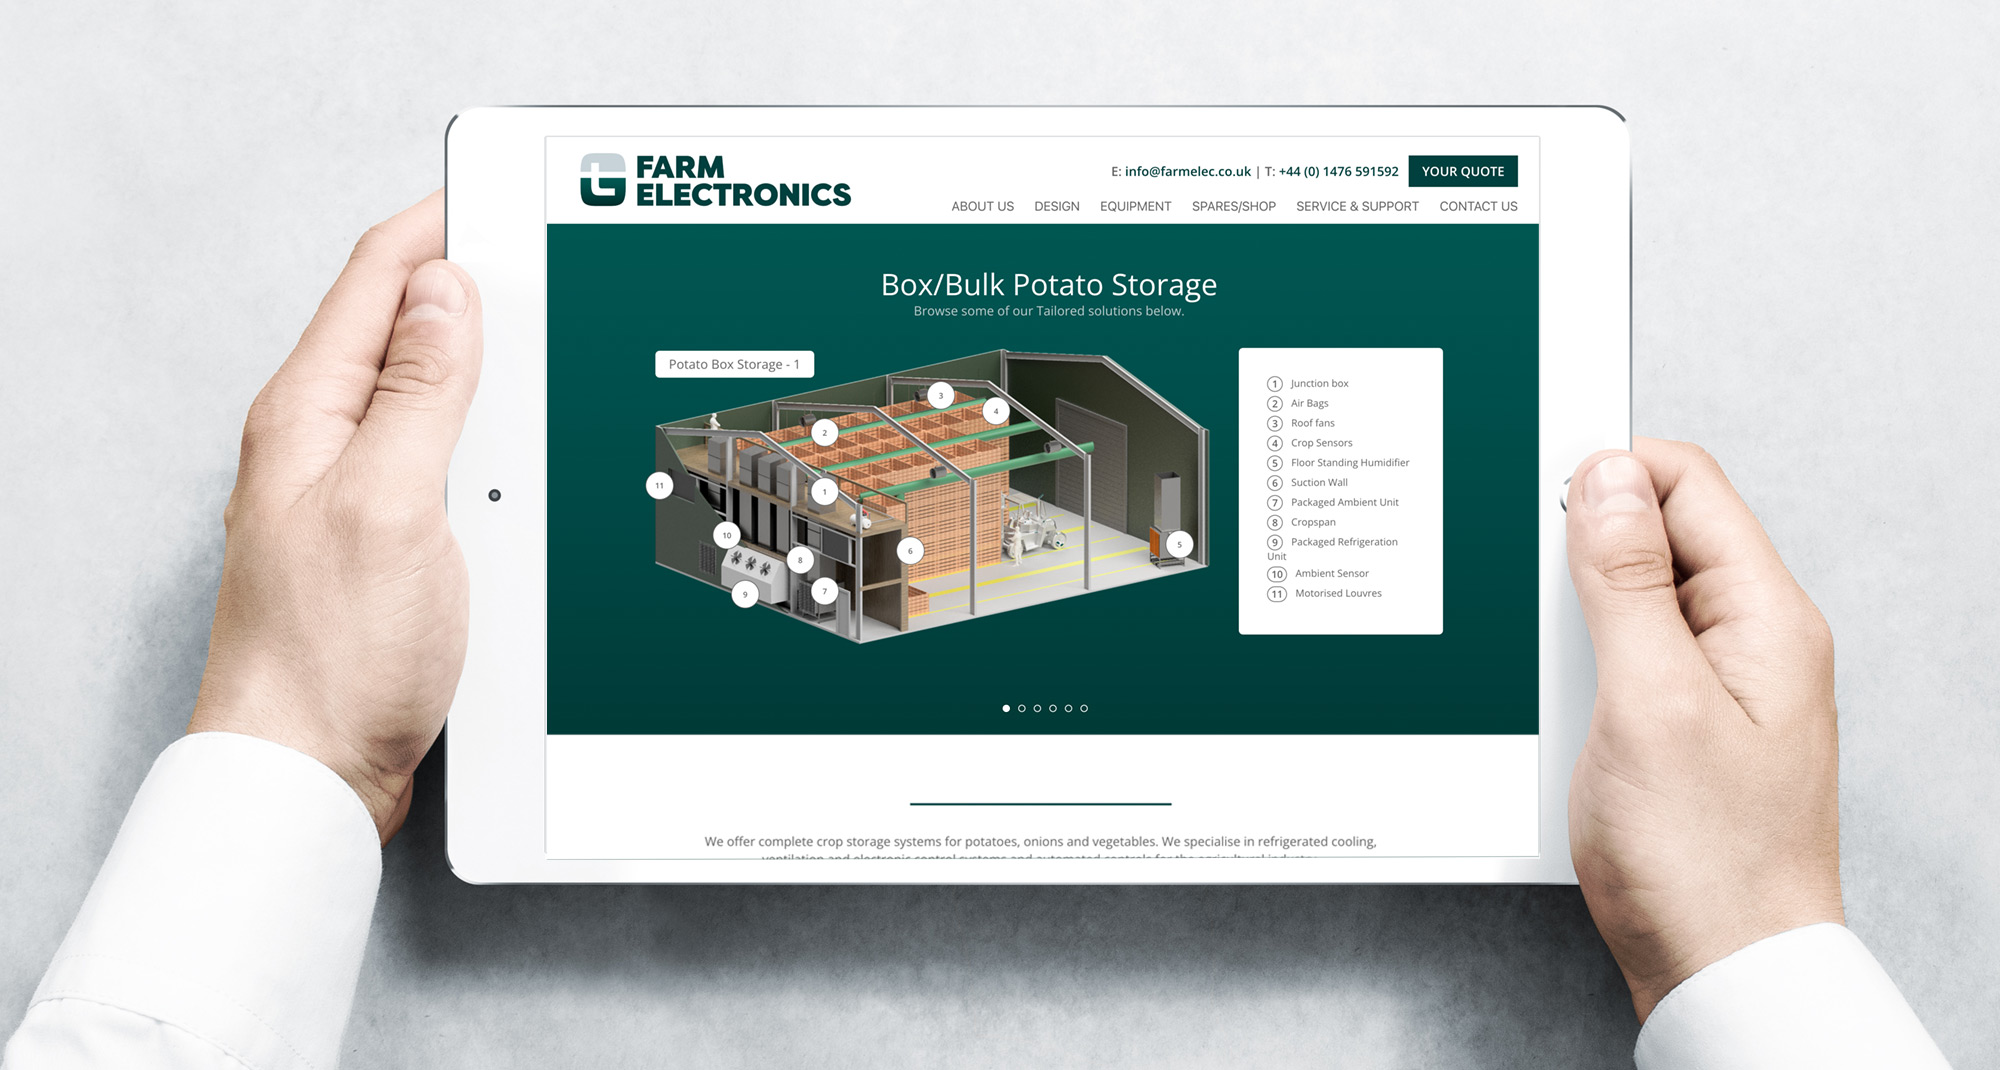 Farm Electronics website on a tablet